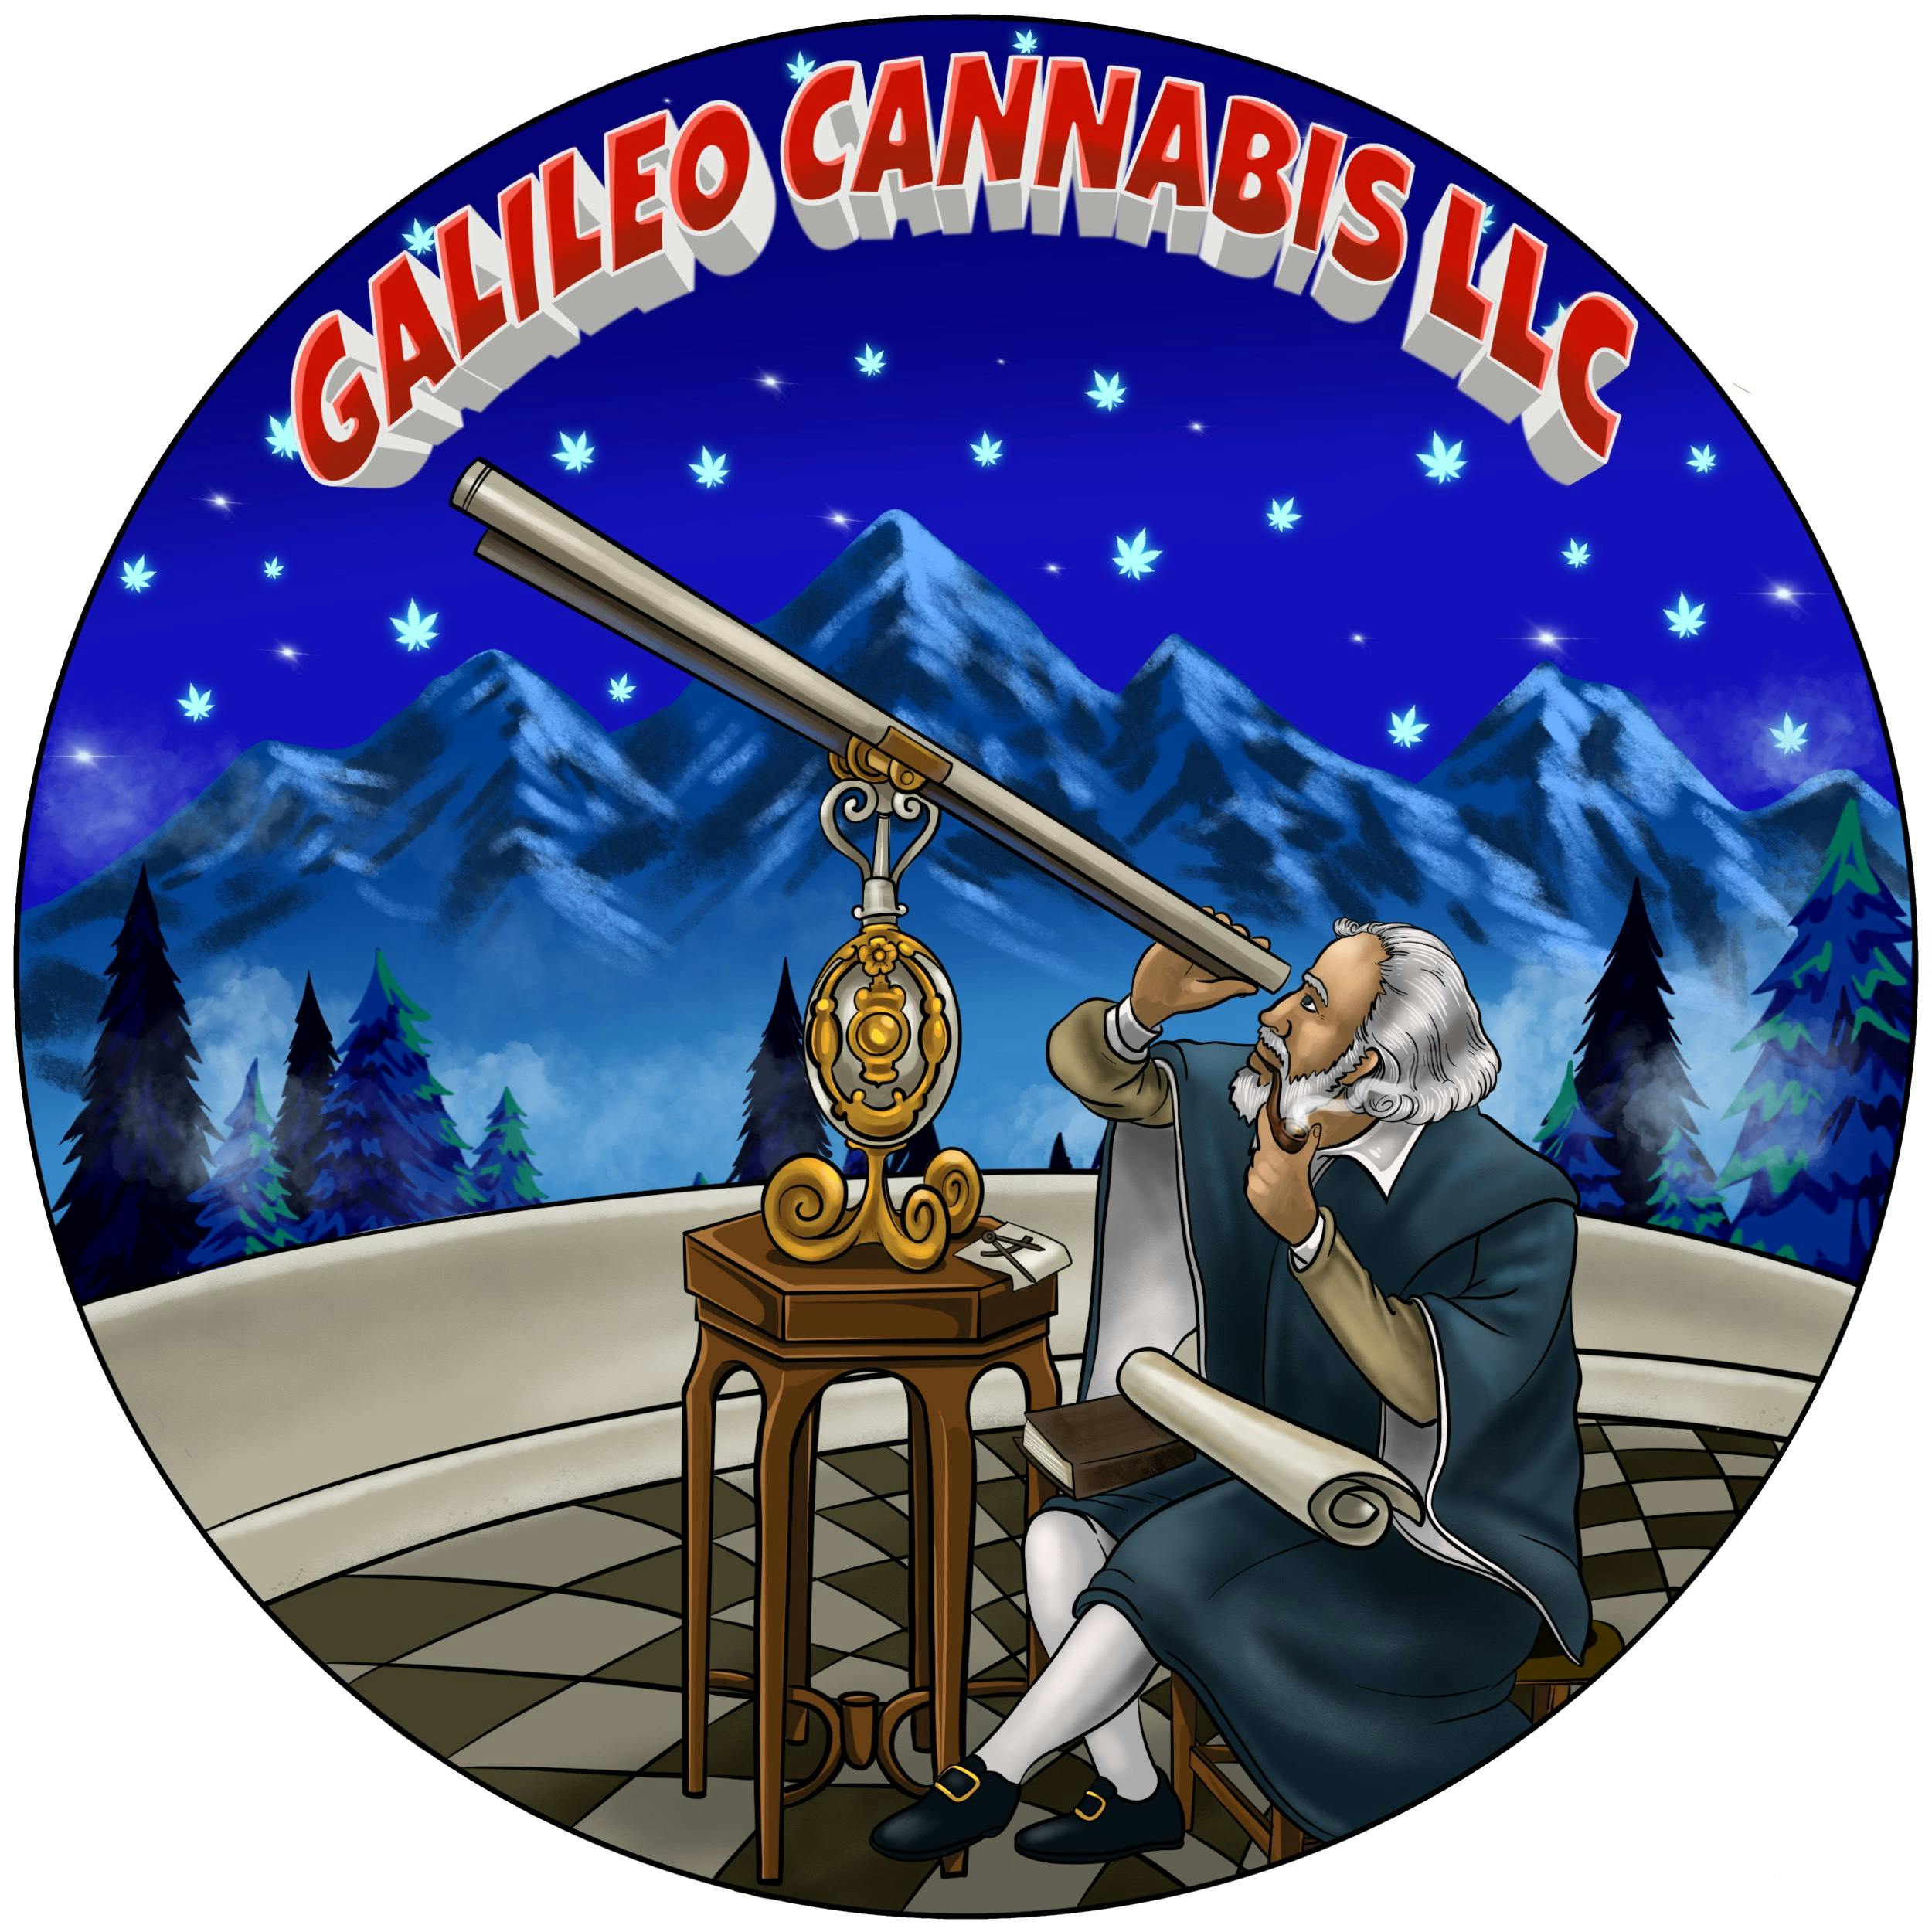 Galileo Cannabis LLC logo